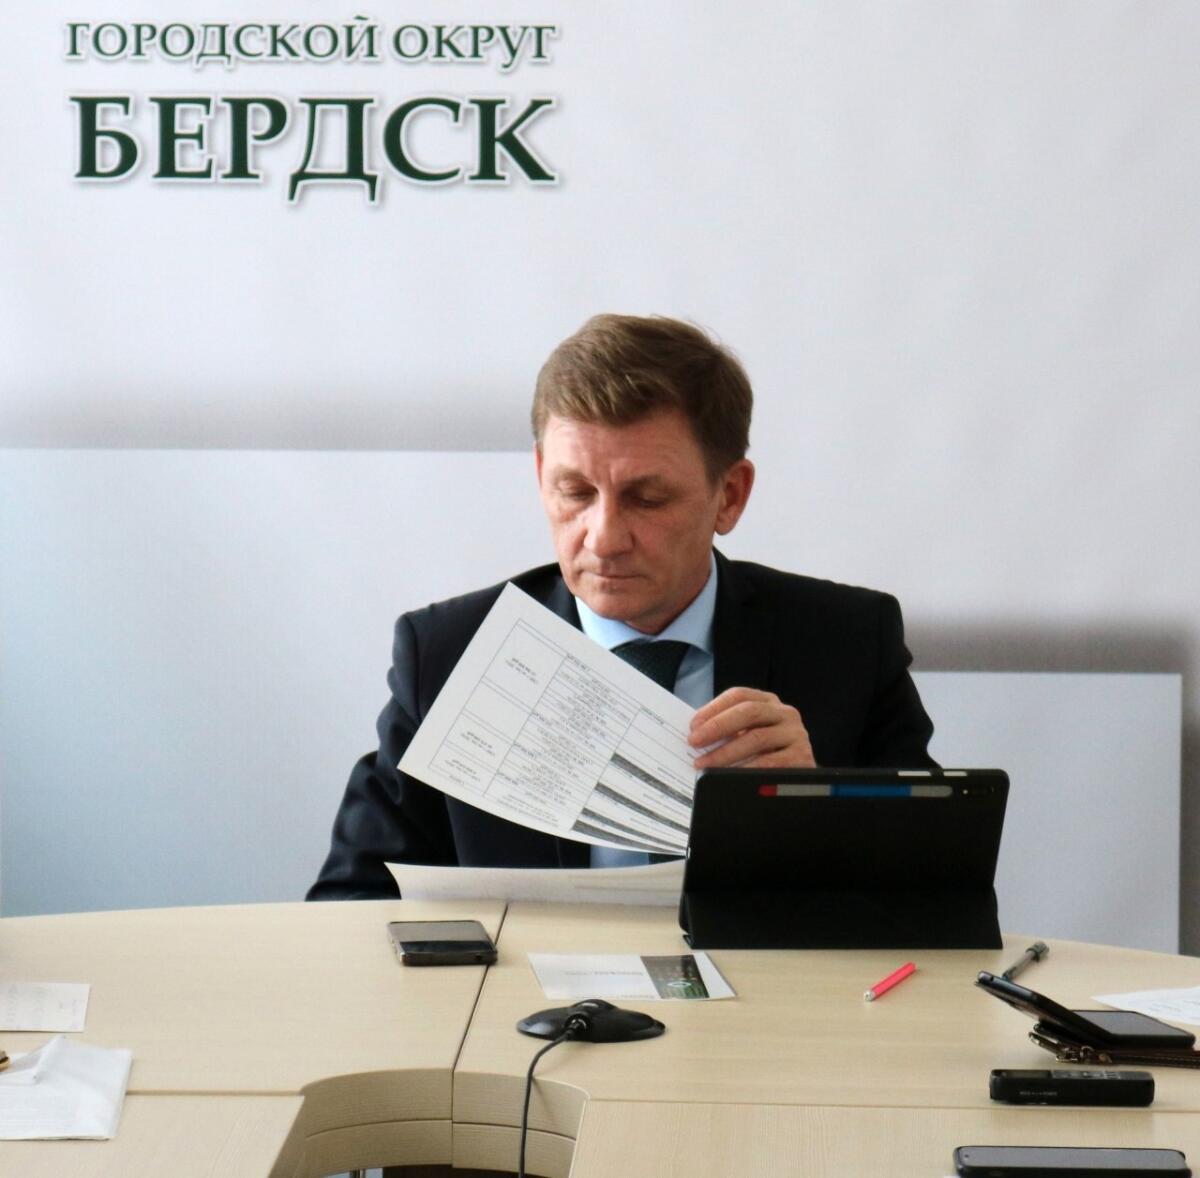 Оценку главе Бердска по итогам первого года работы 18 апреля поставят депутаты